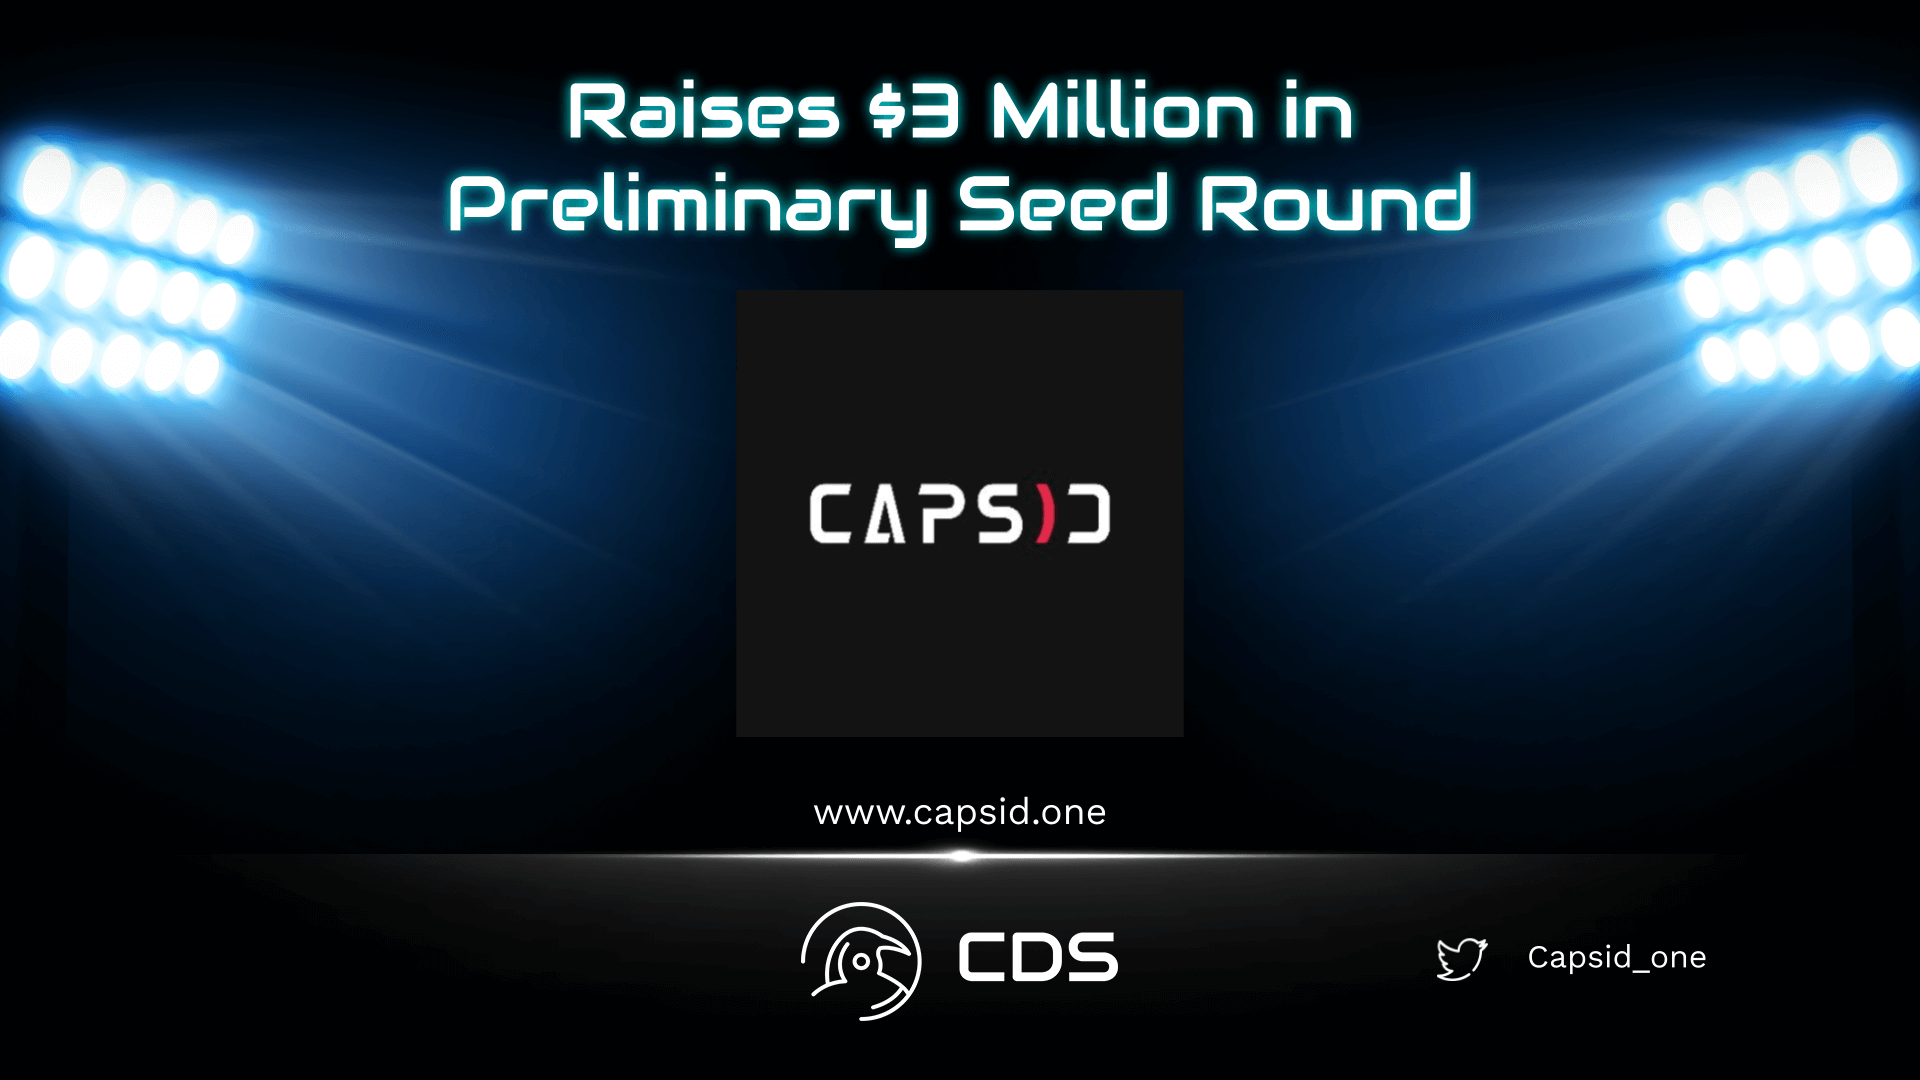 Capsid Raises $3 Million